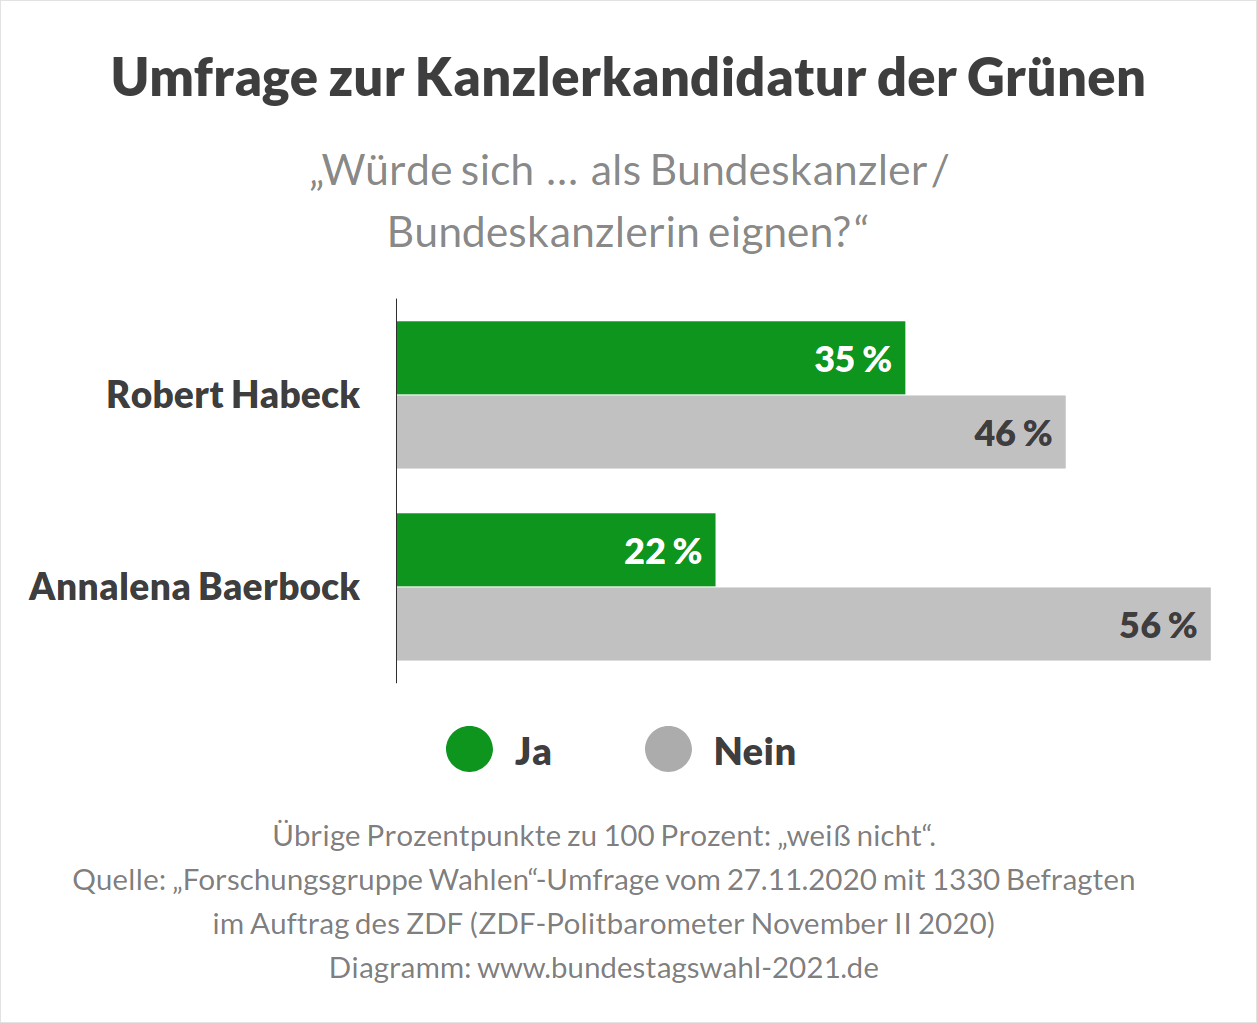 Habeck oder Baerbock? Wer wird Kanzlerkandidat der Grünen bei der Bundestagswahl (Umfrage).